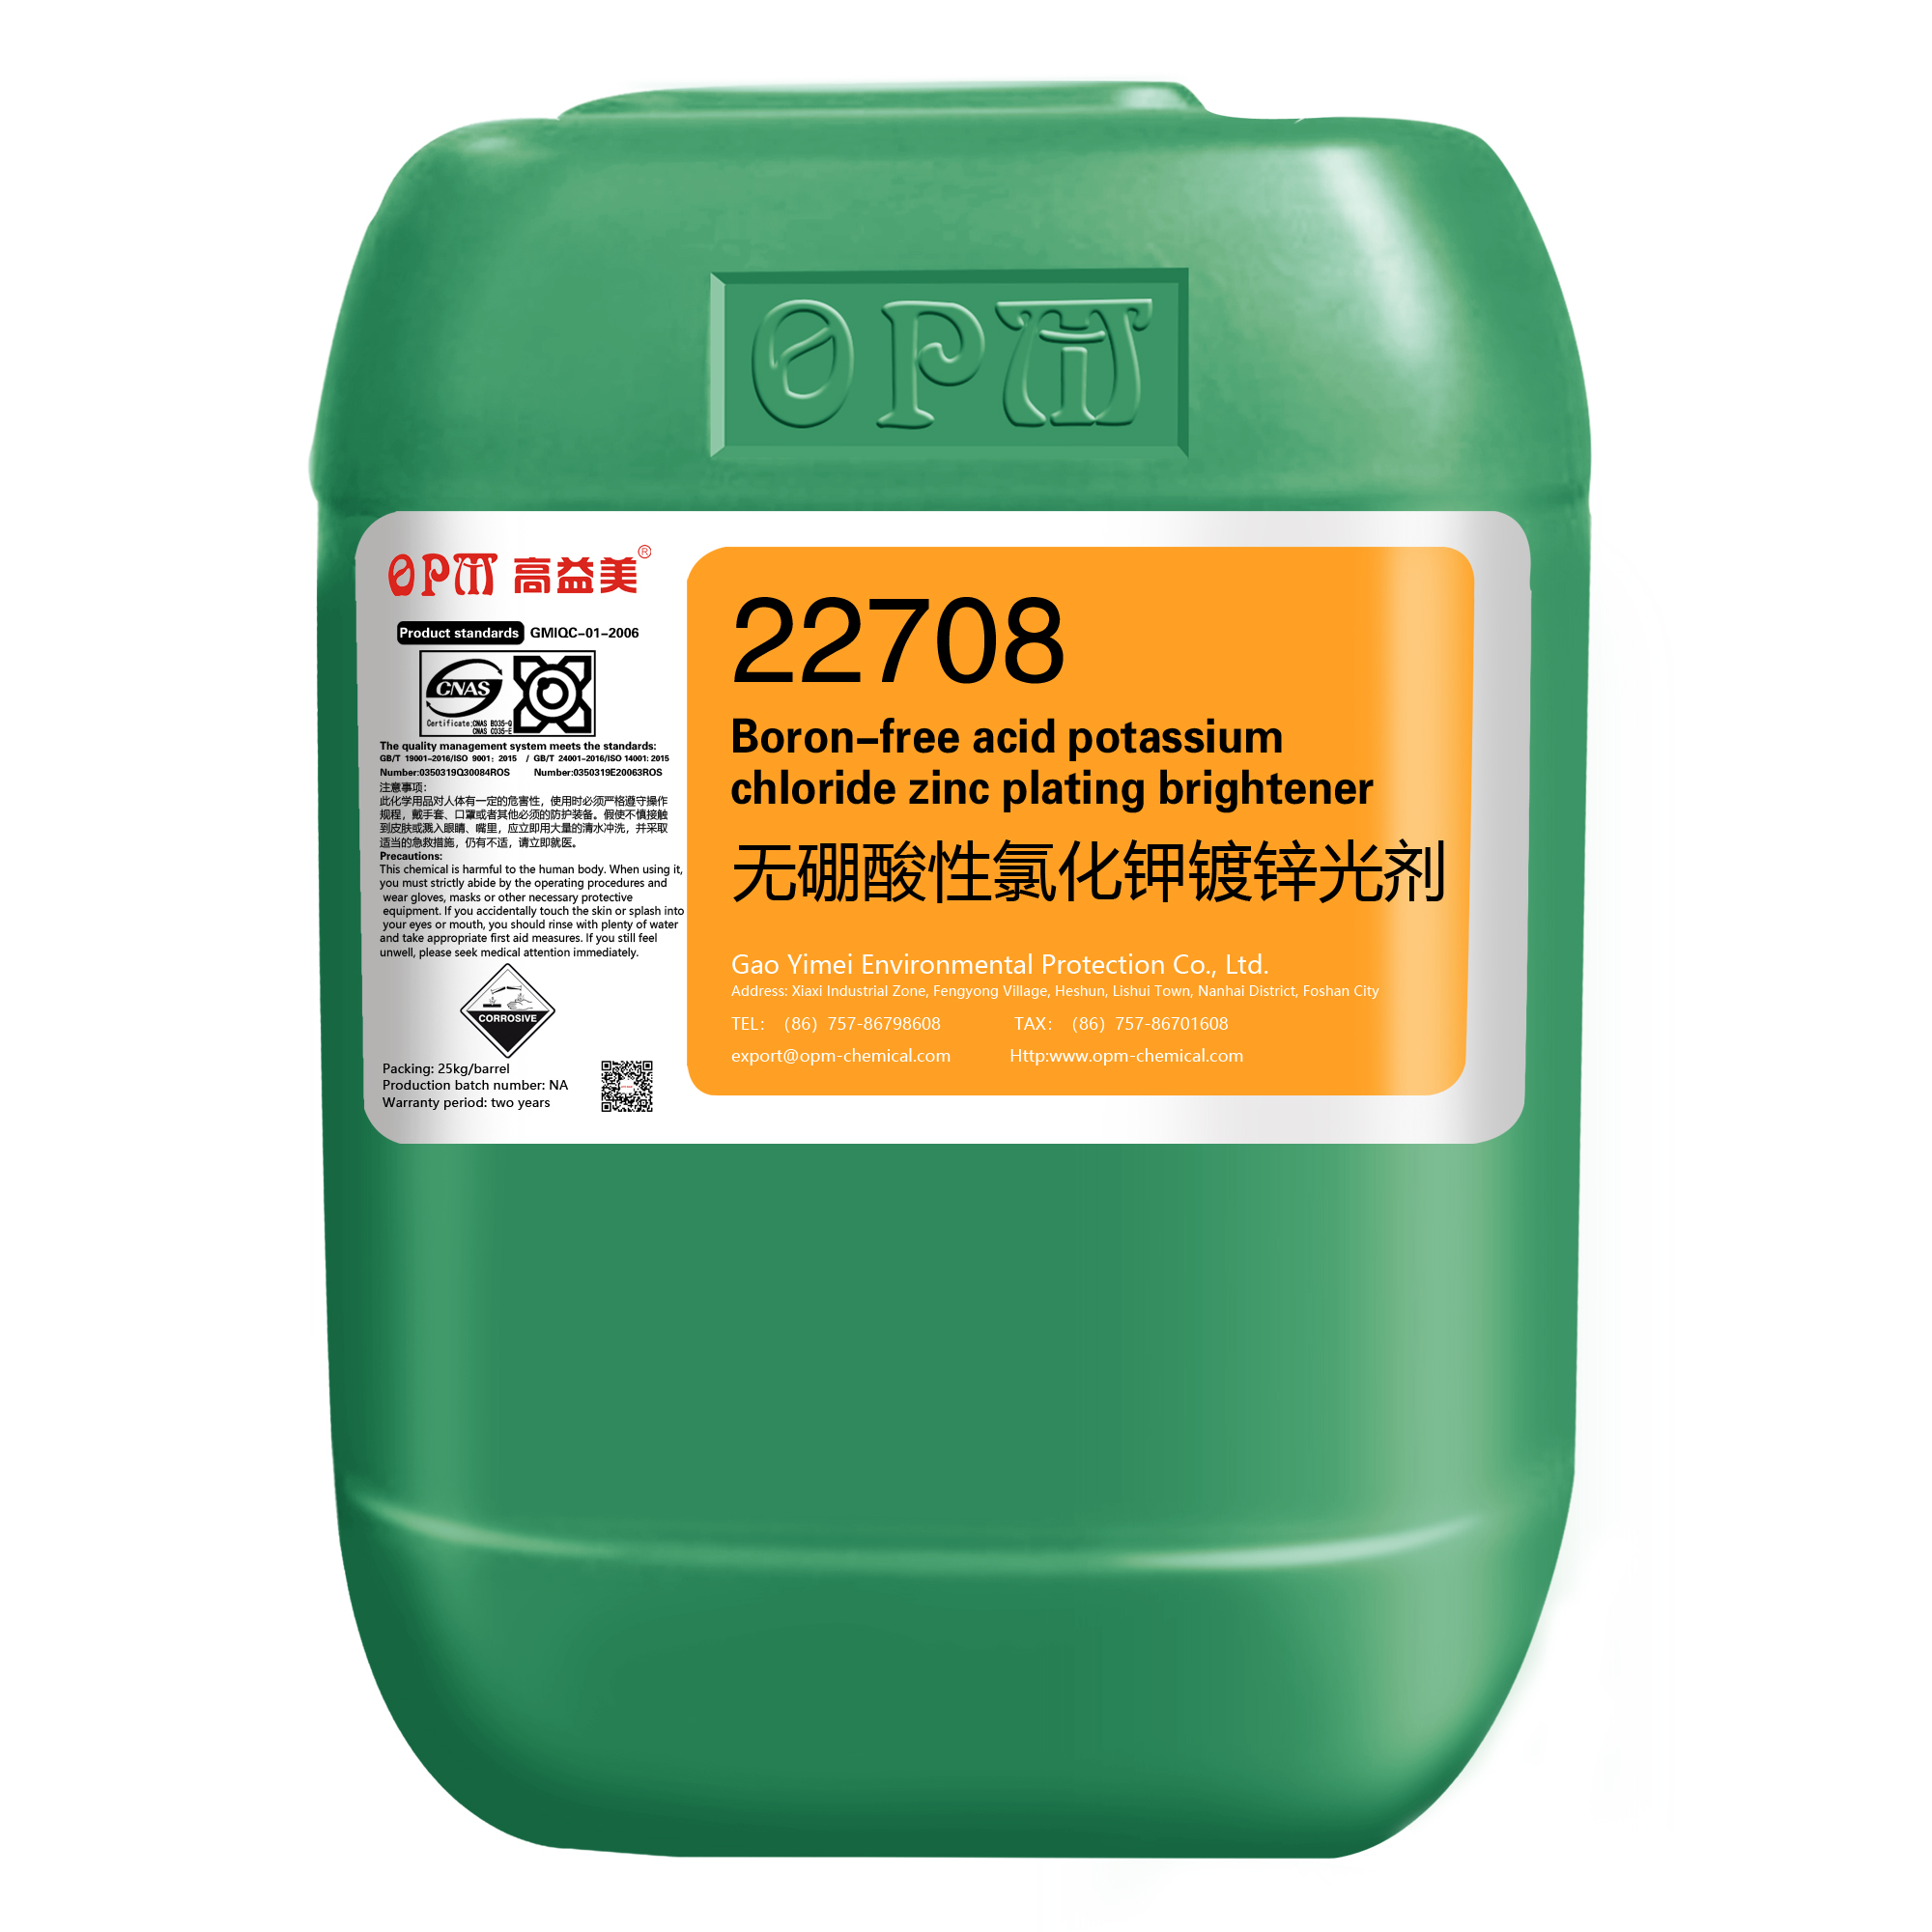 22708Boron-free potassium chloride zinc acid brightener